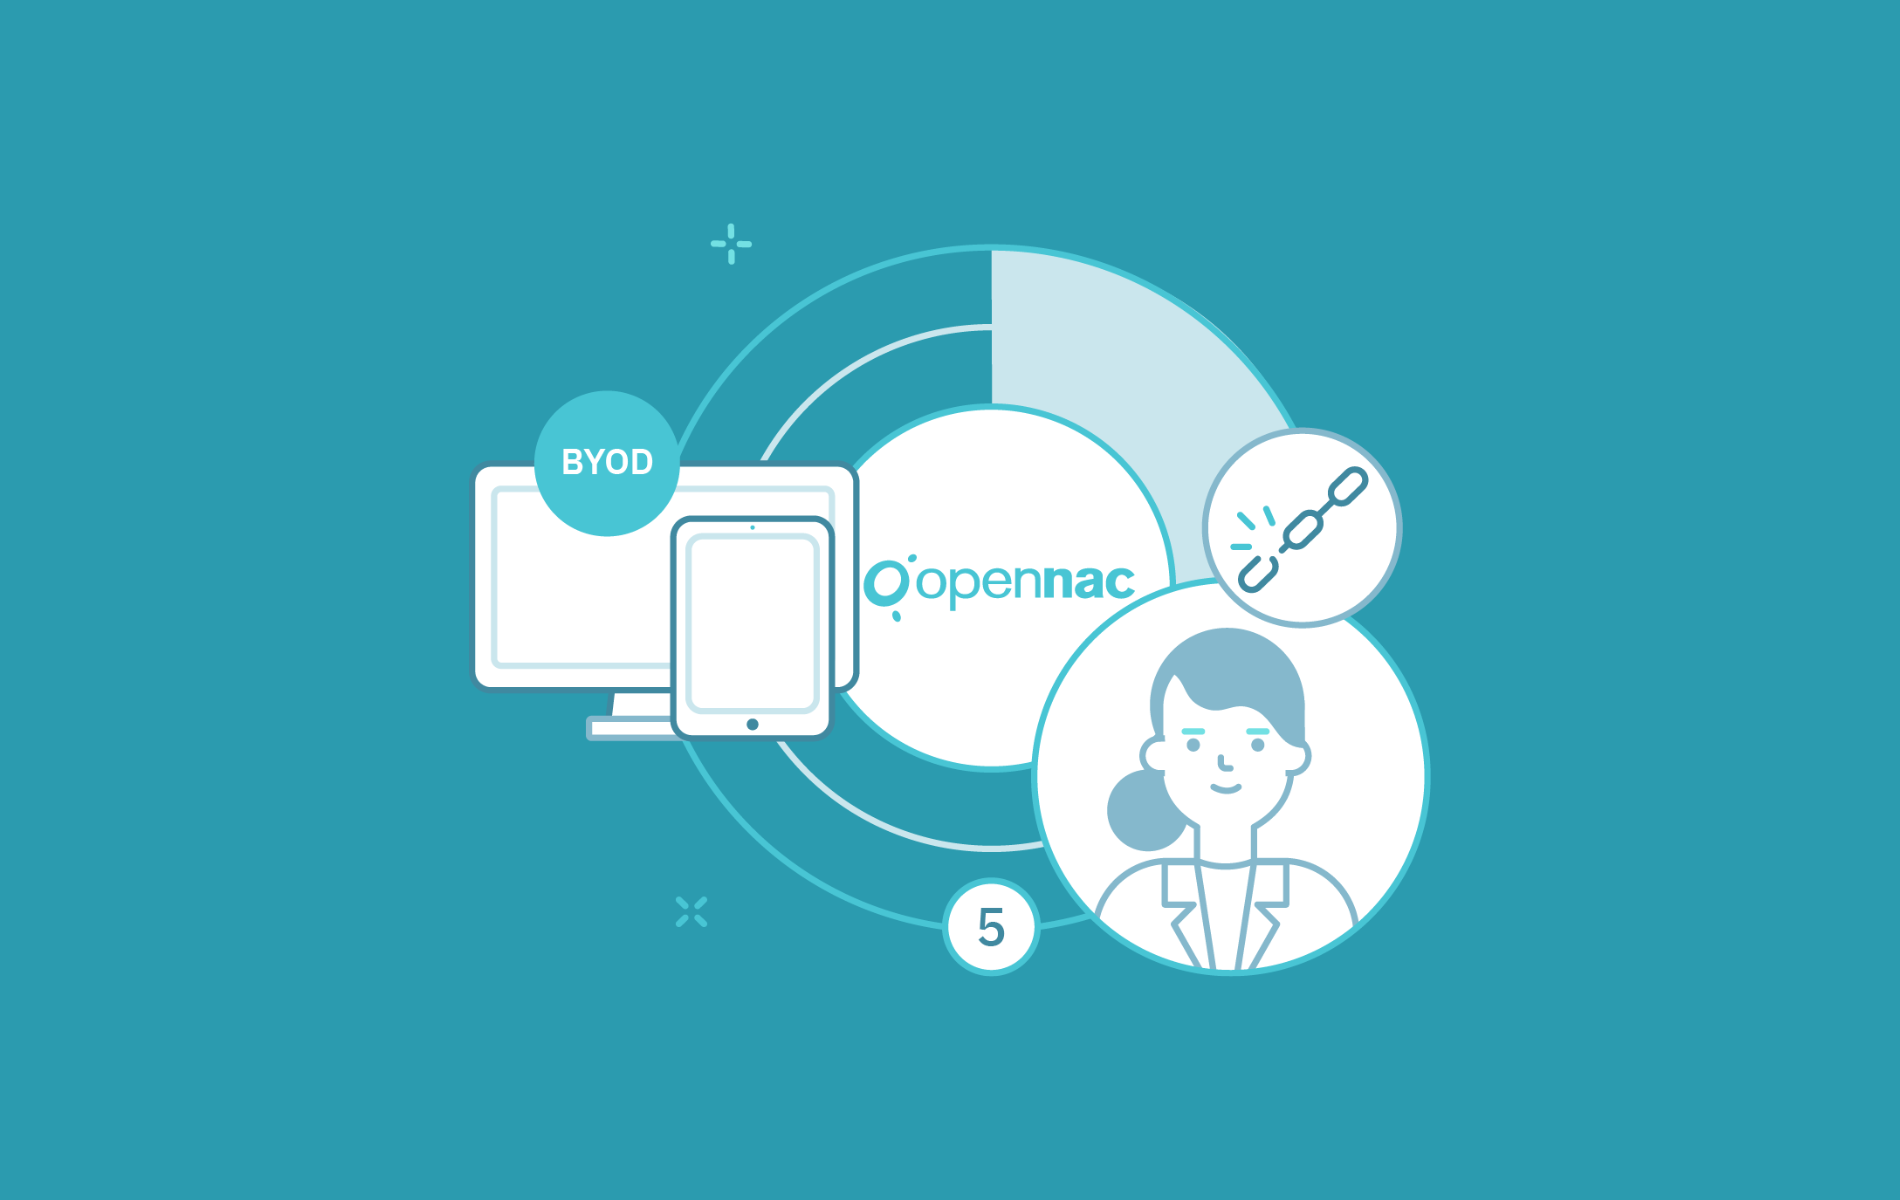 La empresa cuenta con OpenNAC Enterprise. Con esta herramienta ha logrado, a través de una política de BYOD, desvincular la identidad de los usuarios de un dispositivo en concreto en pocos minutos.